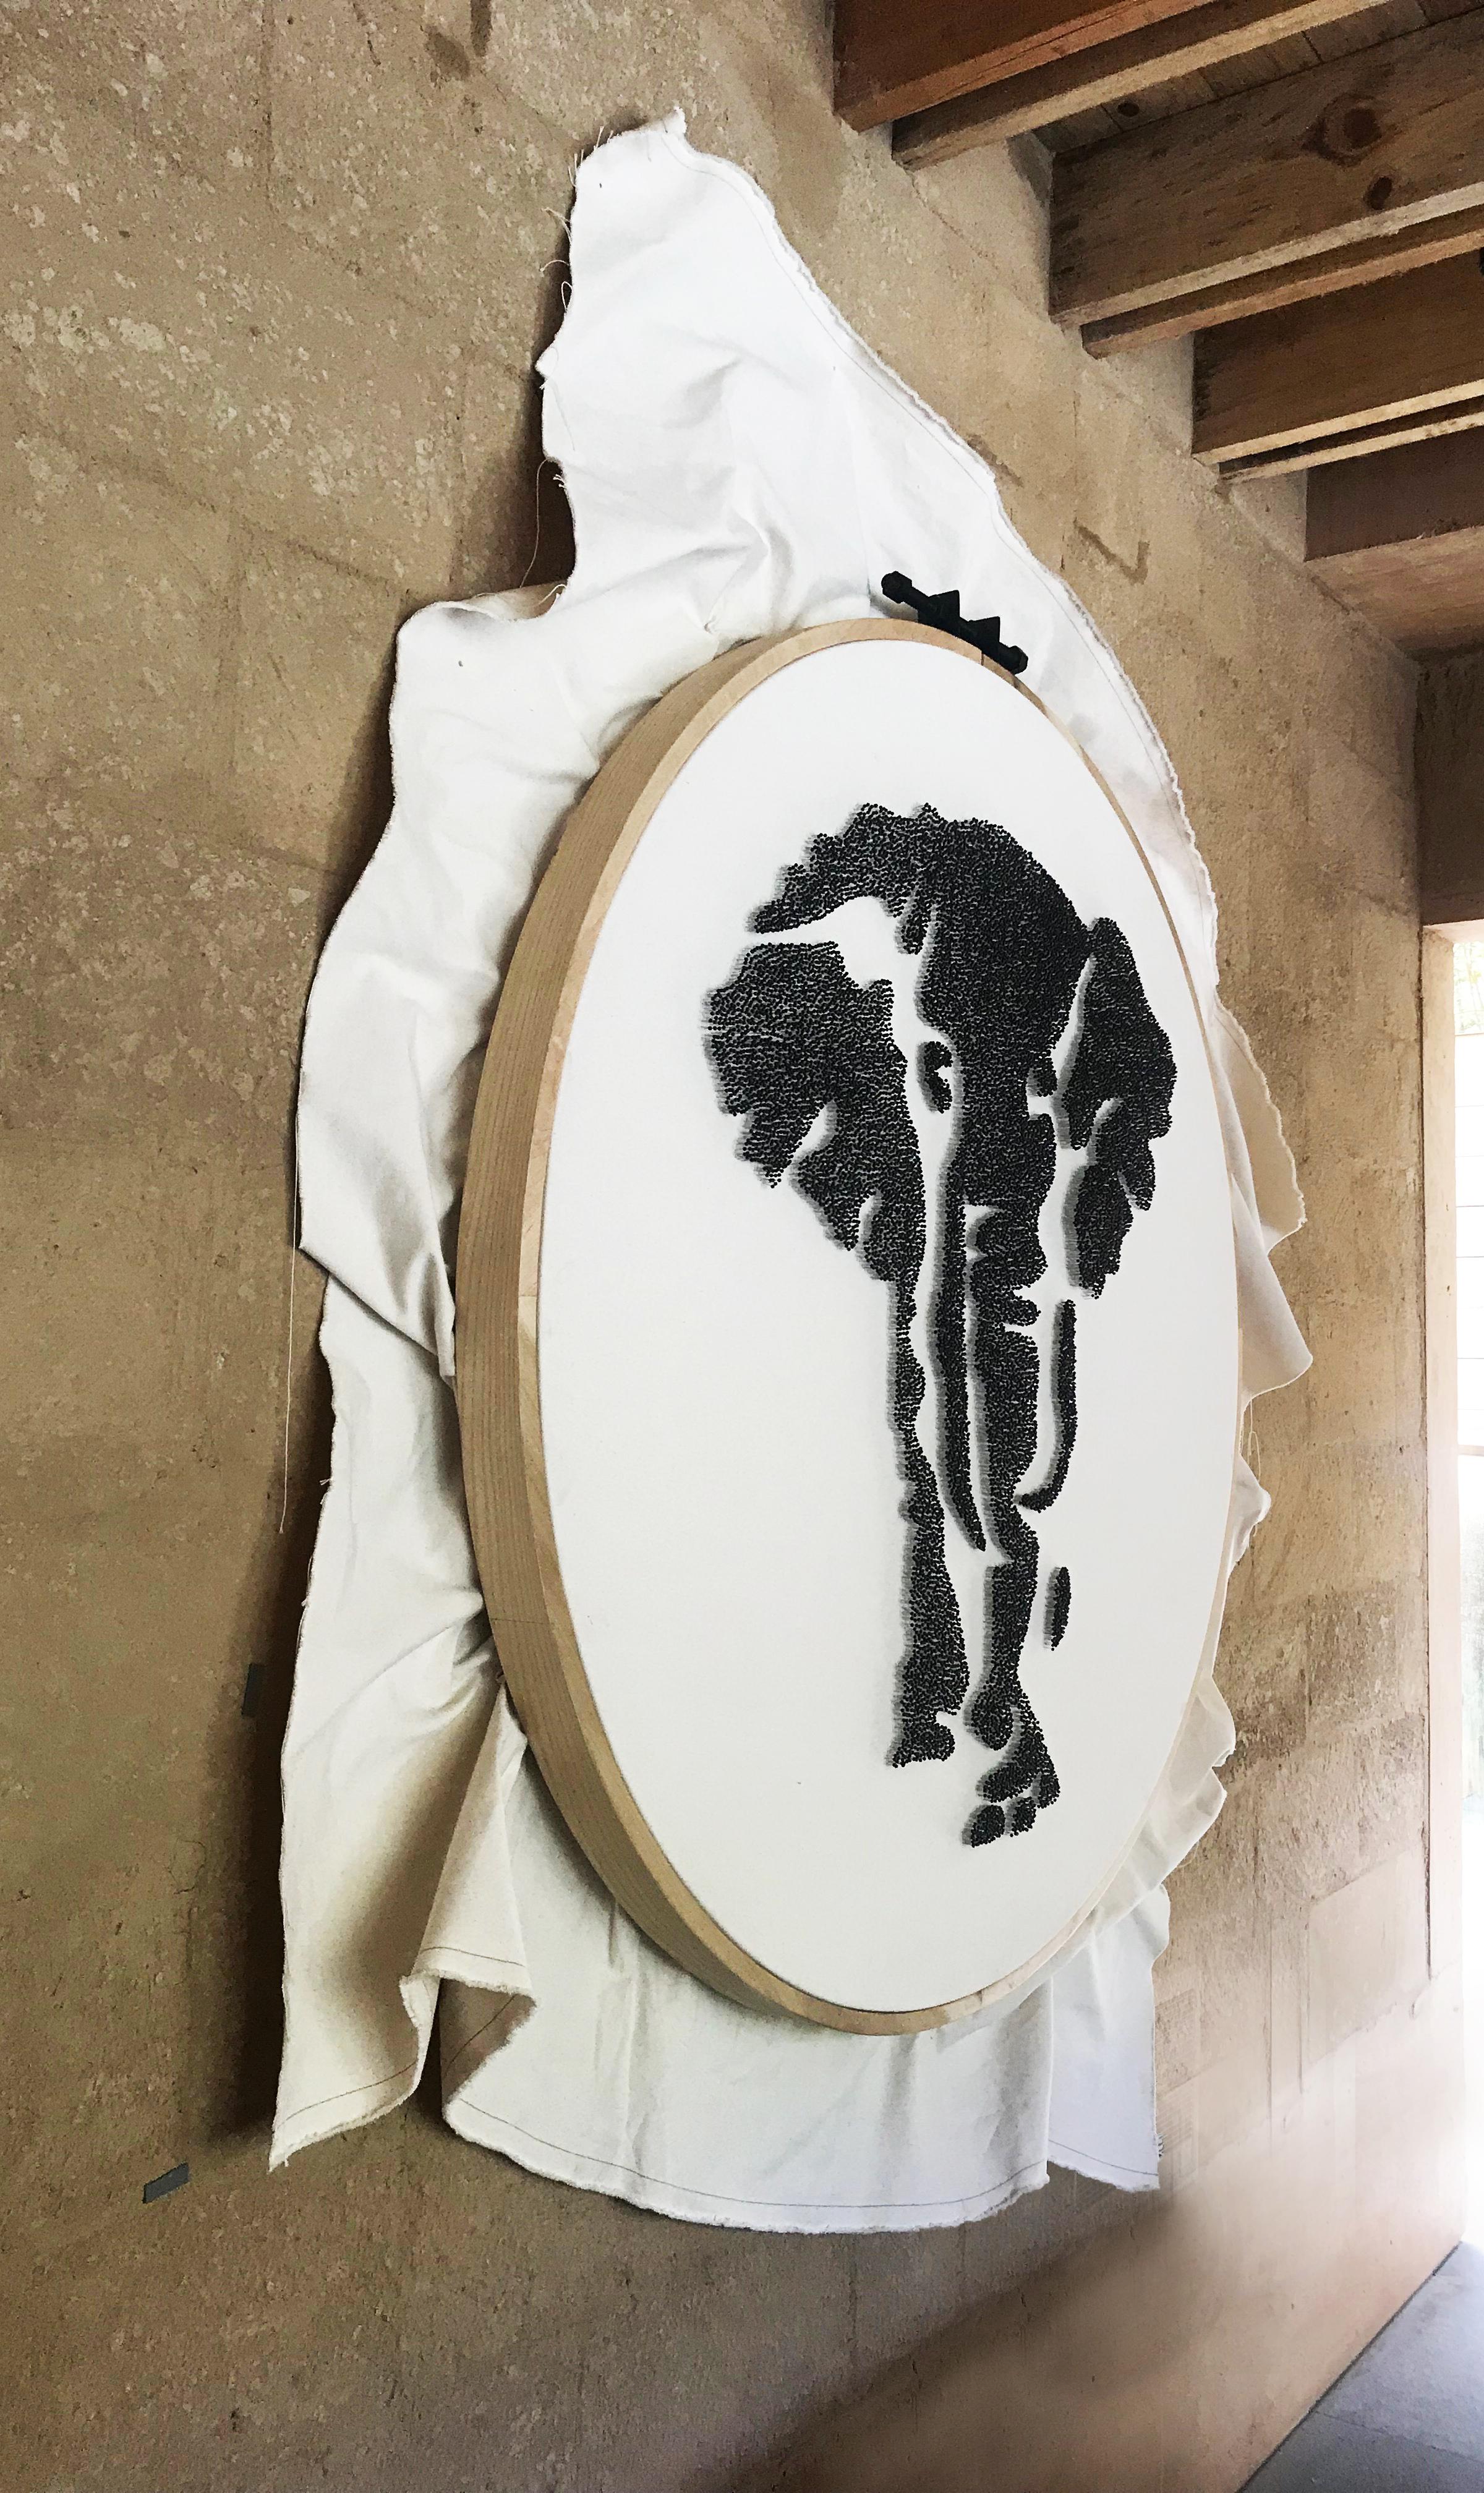 Magnifique sculpture en tissu encadrée d'un éléphant, parfaite pour les murs - Sculpture de Arozarena De La Fuente